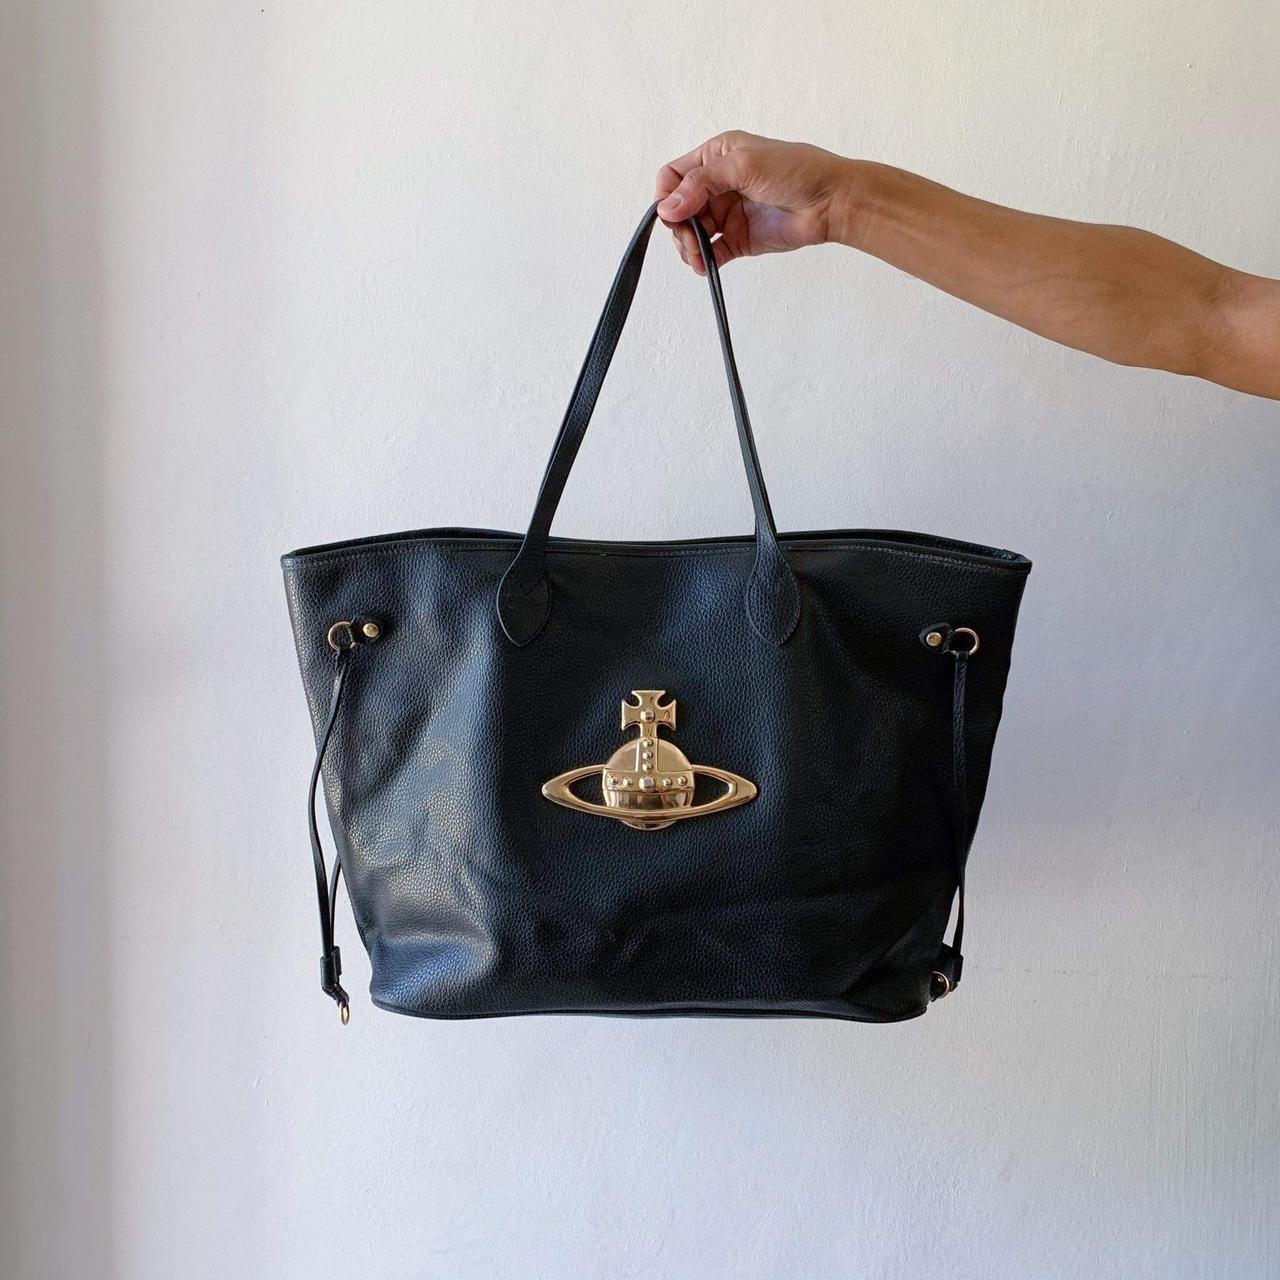 Authentic Vintage Vivienne Westwood Tote Bag, 📌...